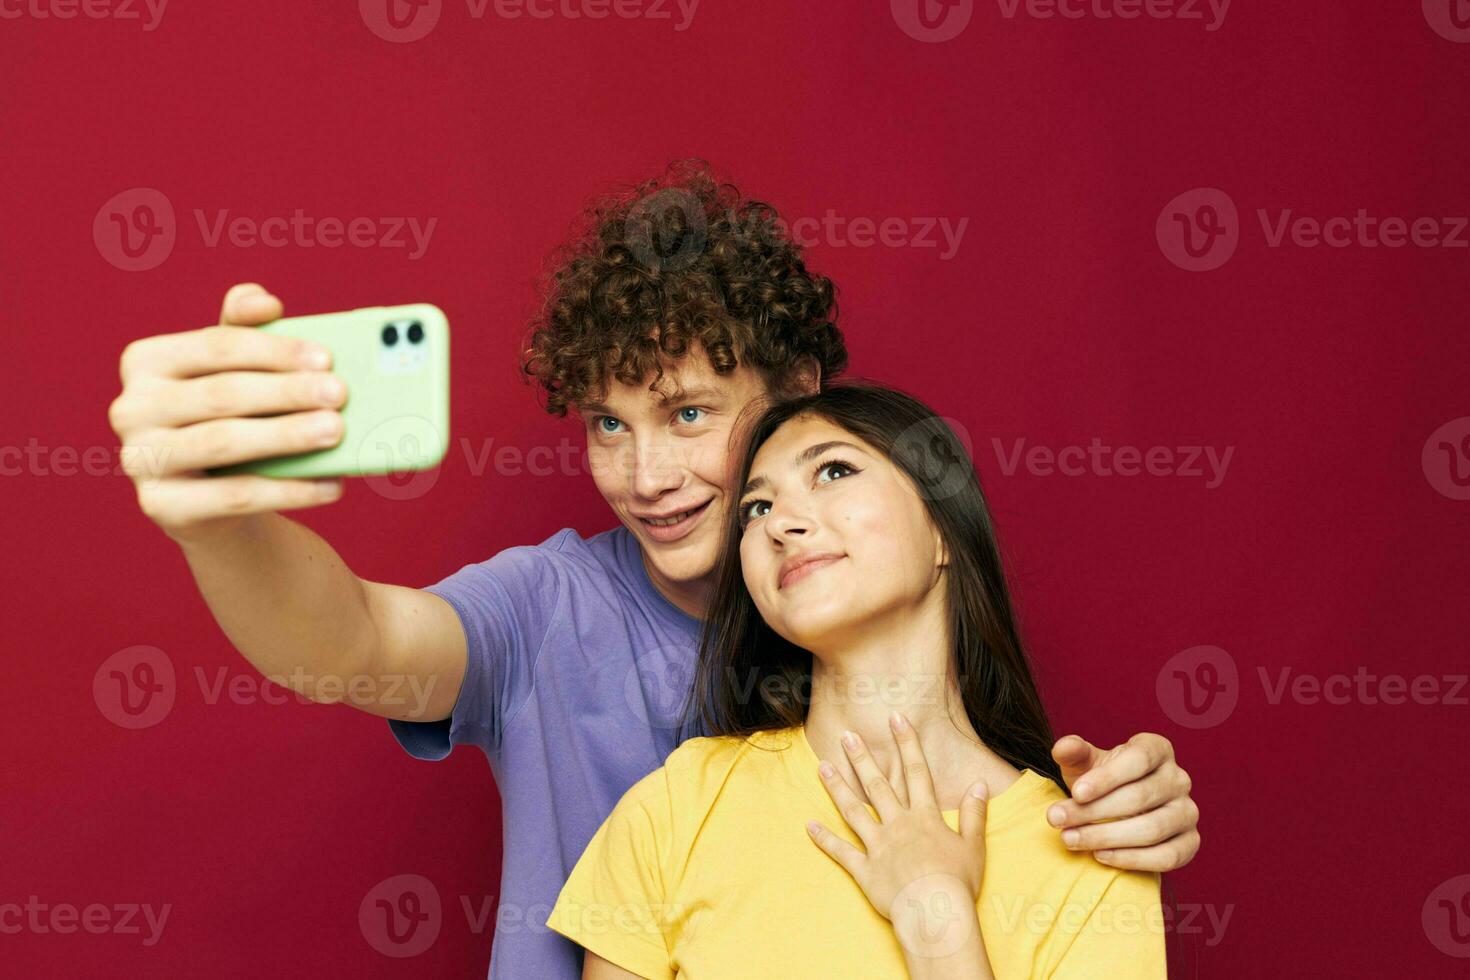 jong Mens en meisje modern stijl emoties pret telefoon jeugd stijl foto